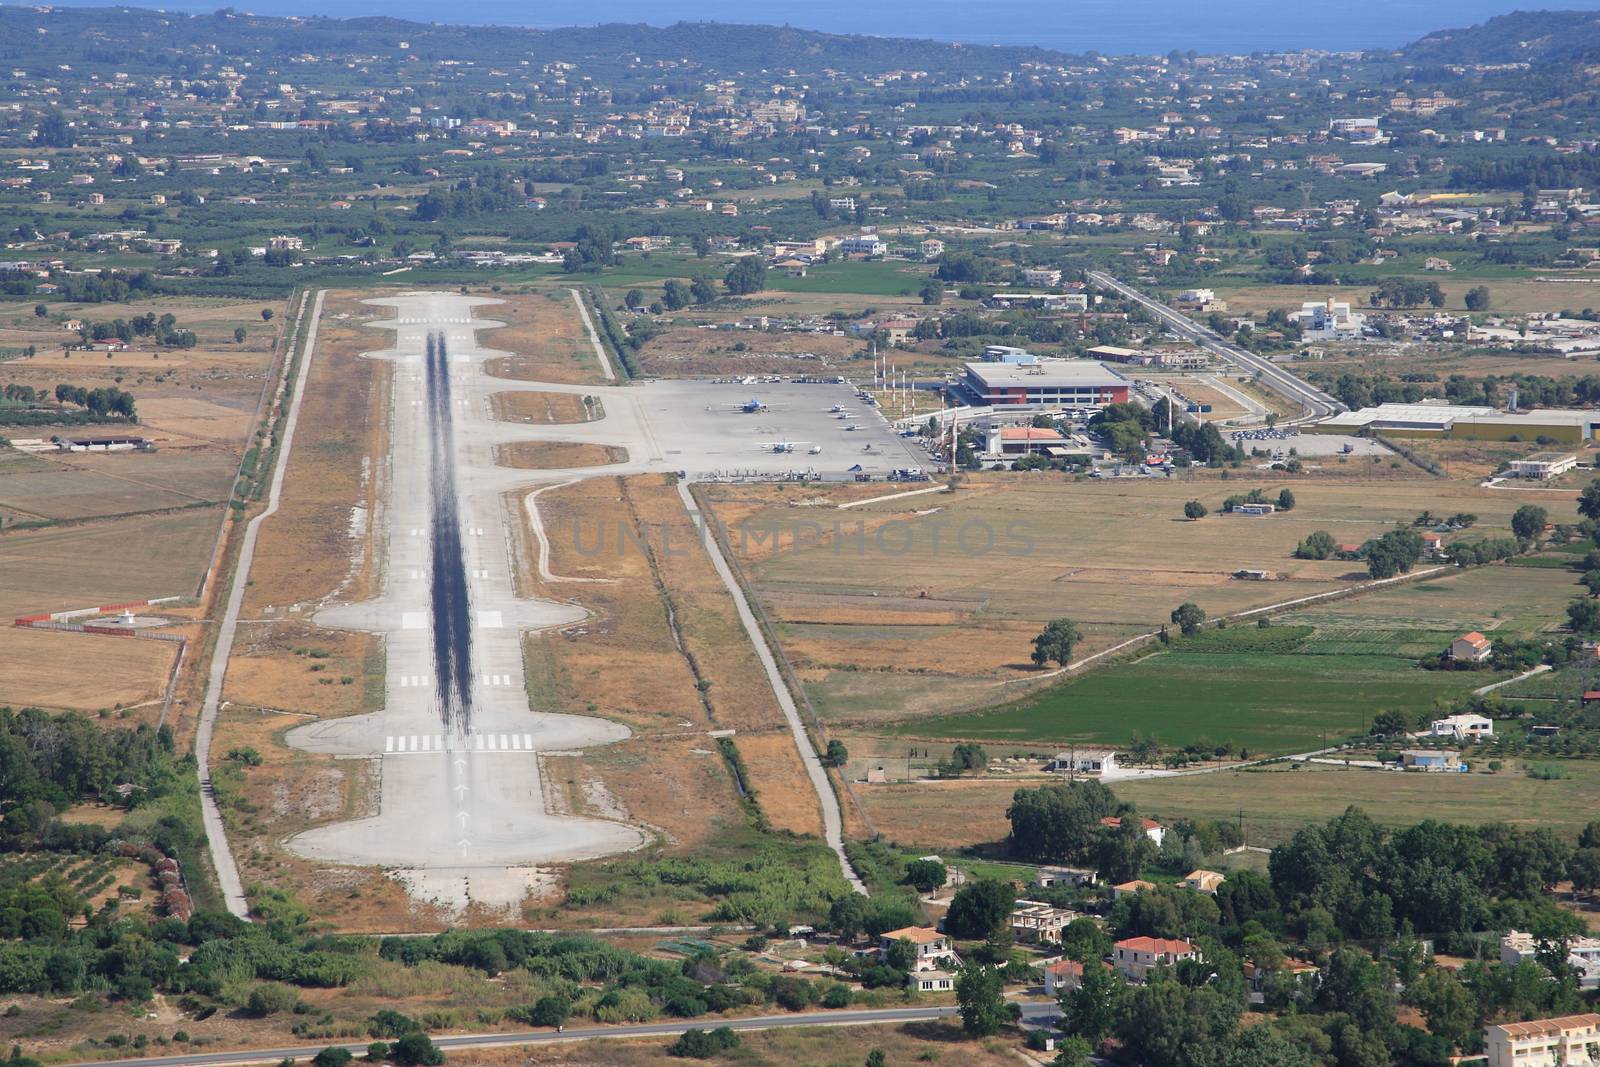 Aerial view on Zakynthos island Greece - Zakynthos airport